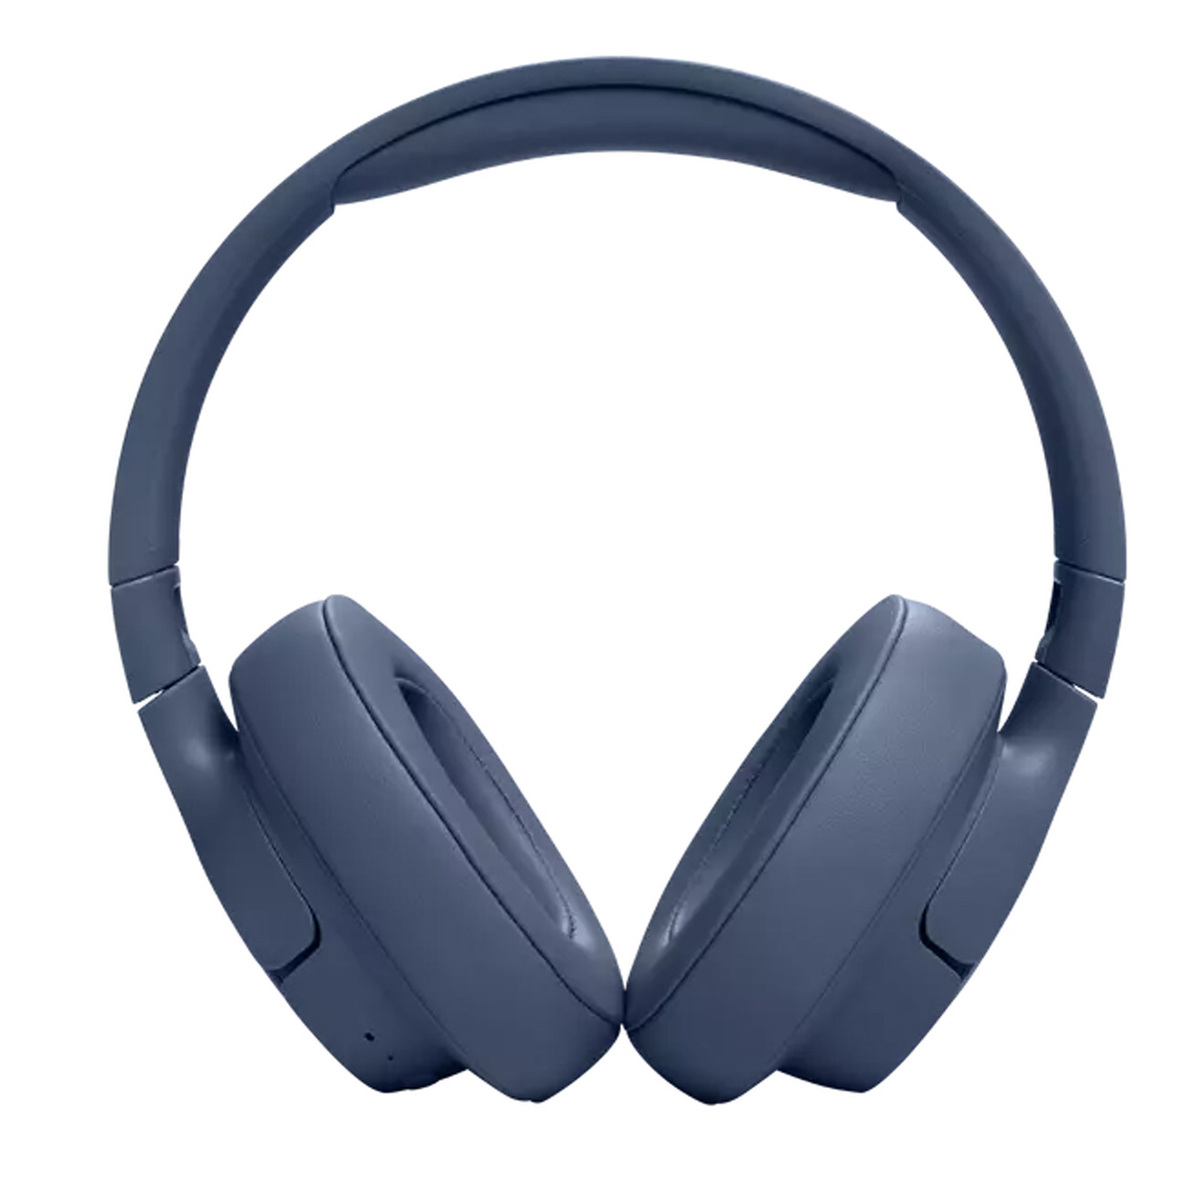 JBL Tune 720BT Wireless Over-Ear Headphones, Blue